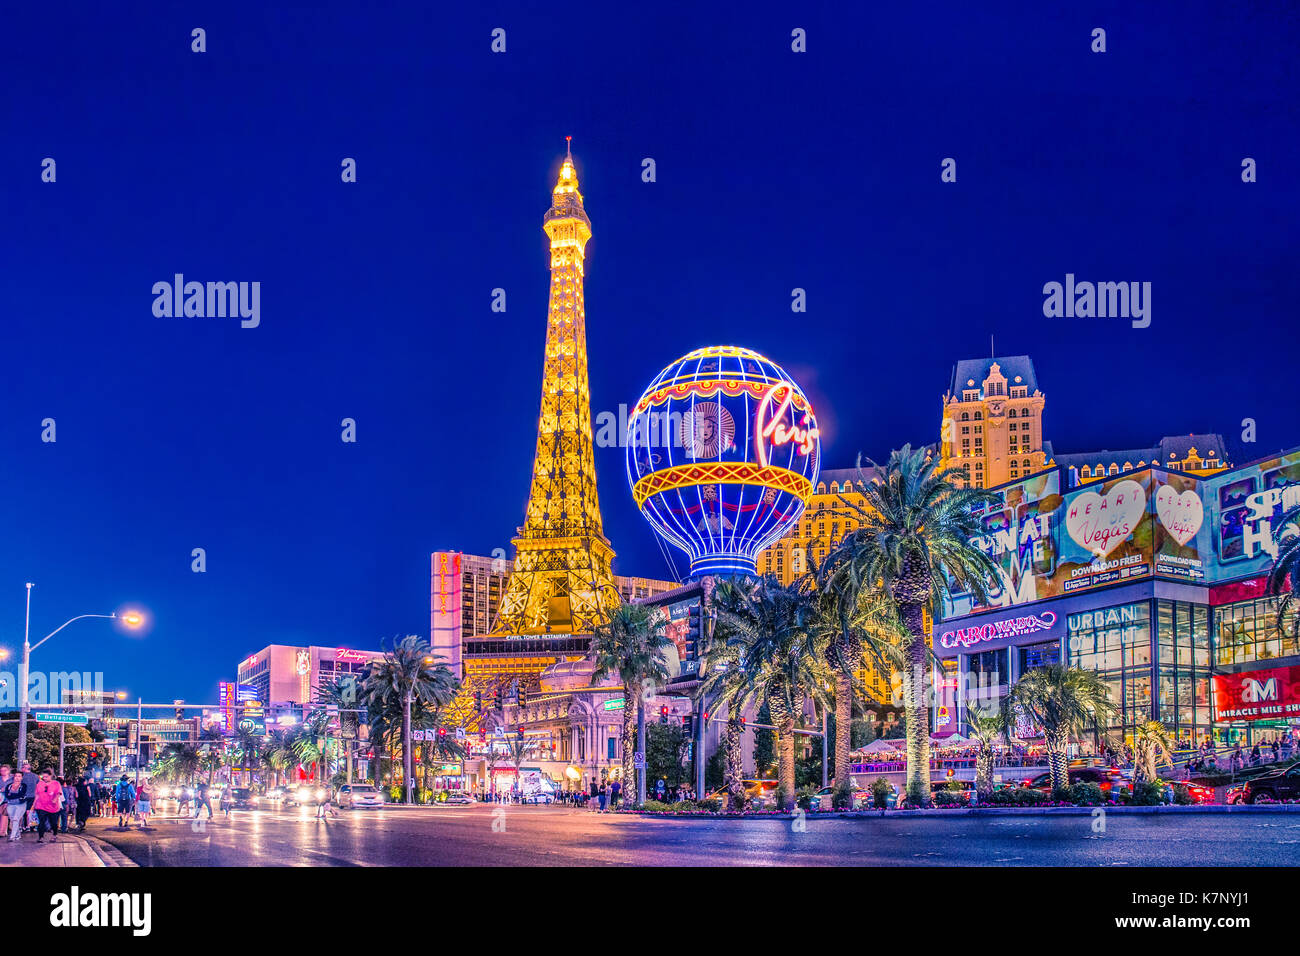 LAS VEGAS, NEVADA - Maggio 17, 2017: bella vista serale di Las Vegas con Paris resort e casinò e hotel in vista. Foto Stock